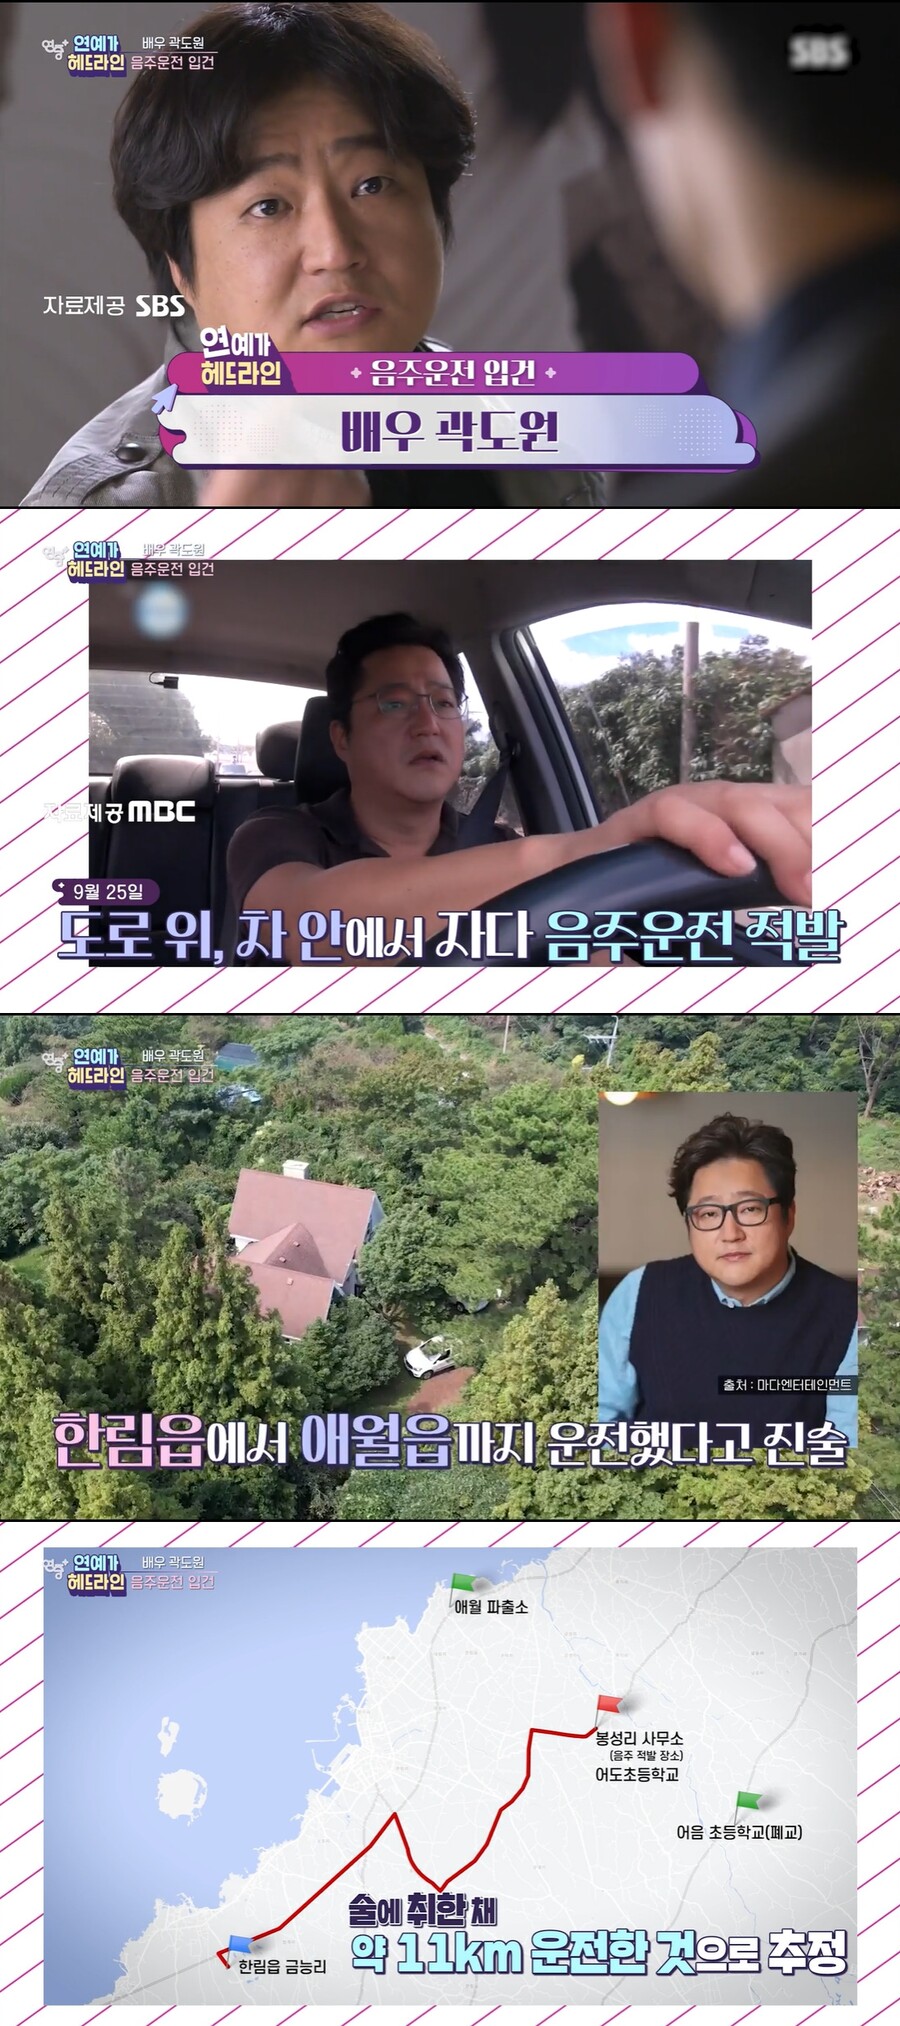 ▲ KBS2 '연중 플러스' 방송화면. 출처| KBS